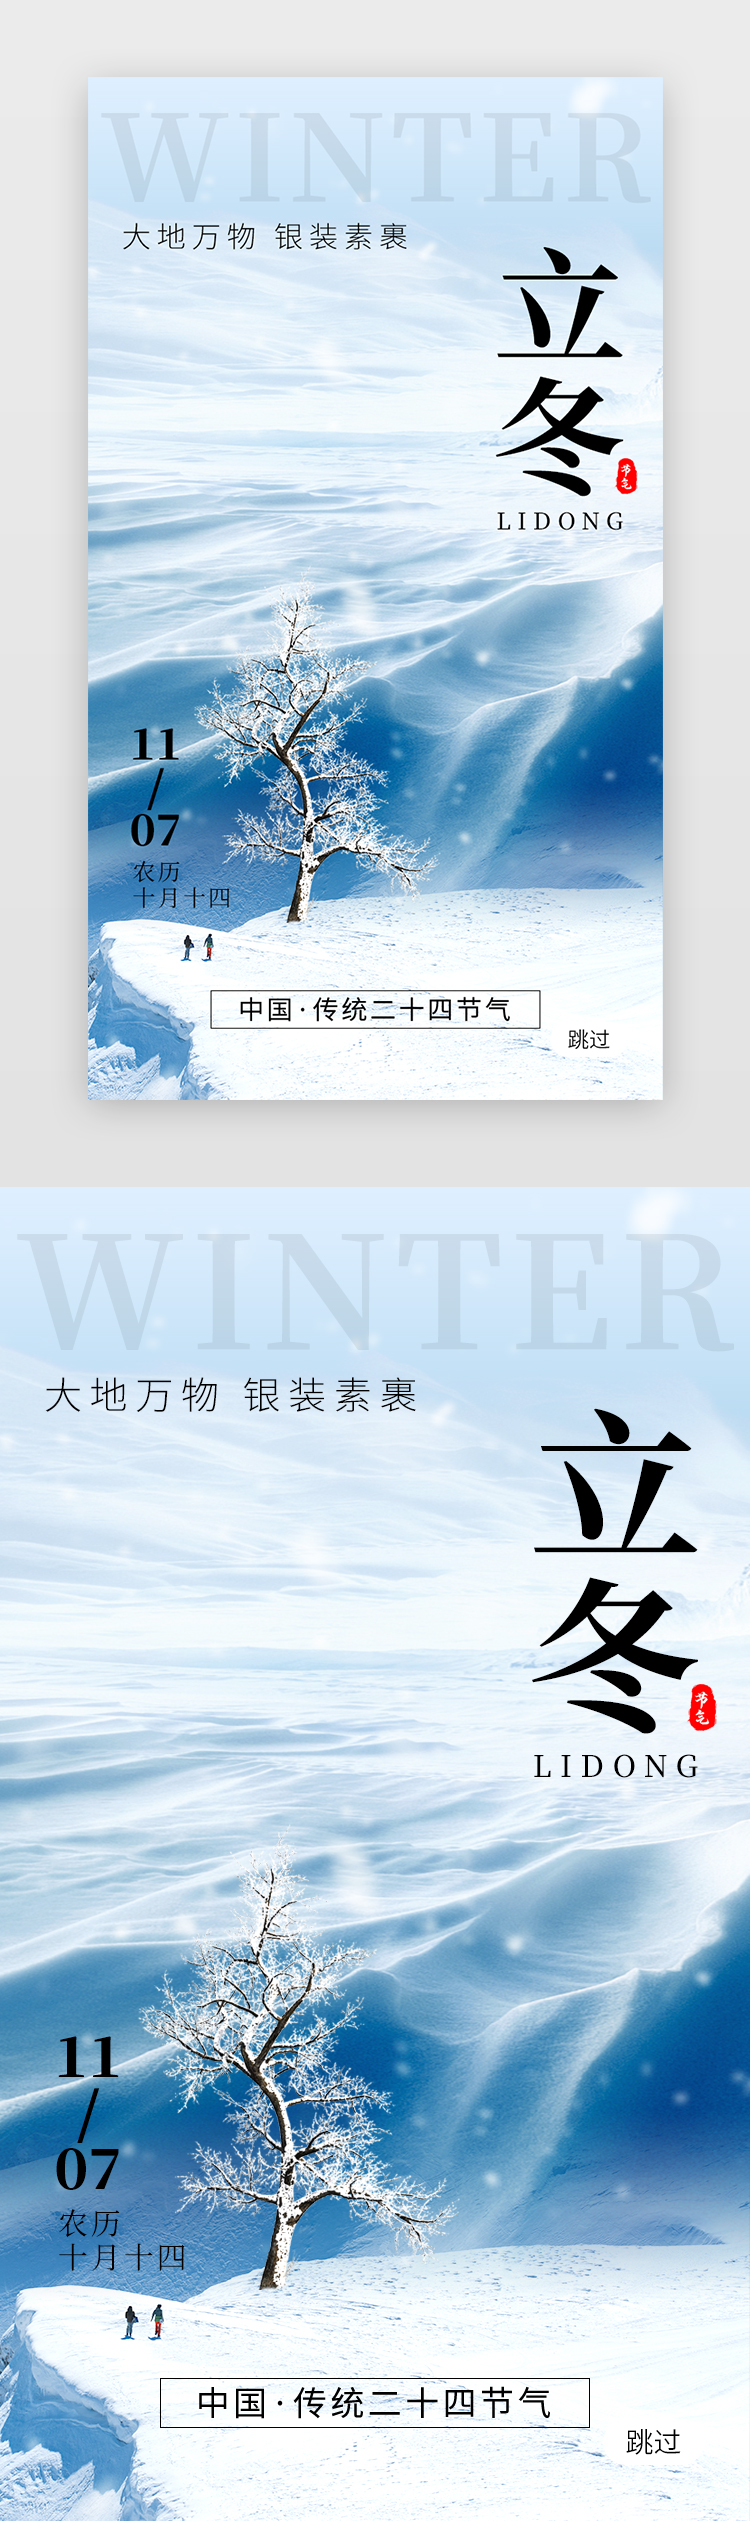 二十四节气立冬app闪屏创意蓝色雪山图片